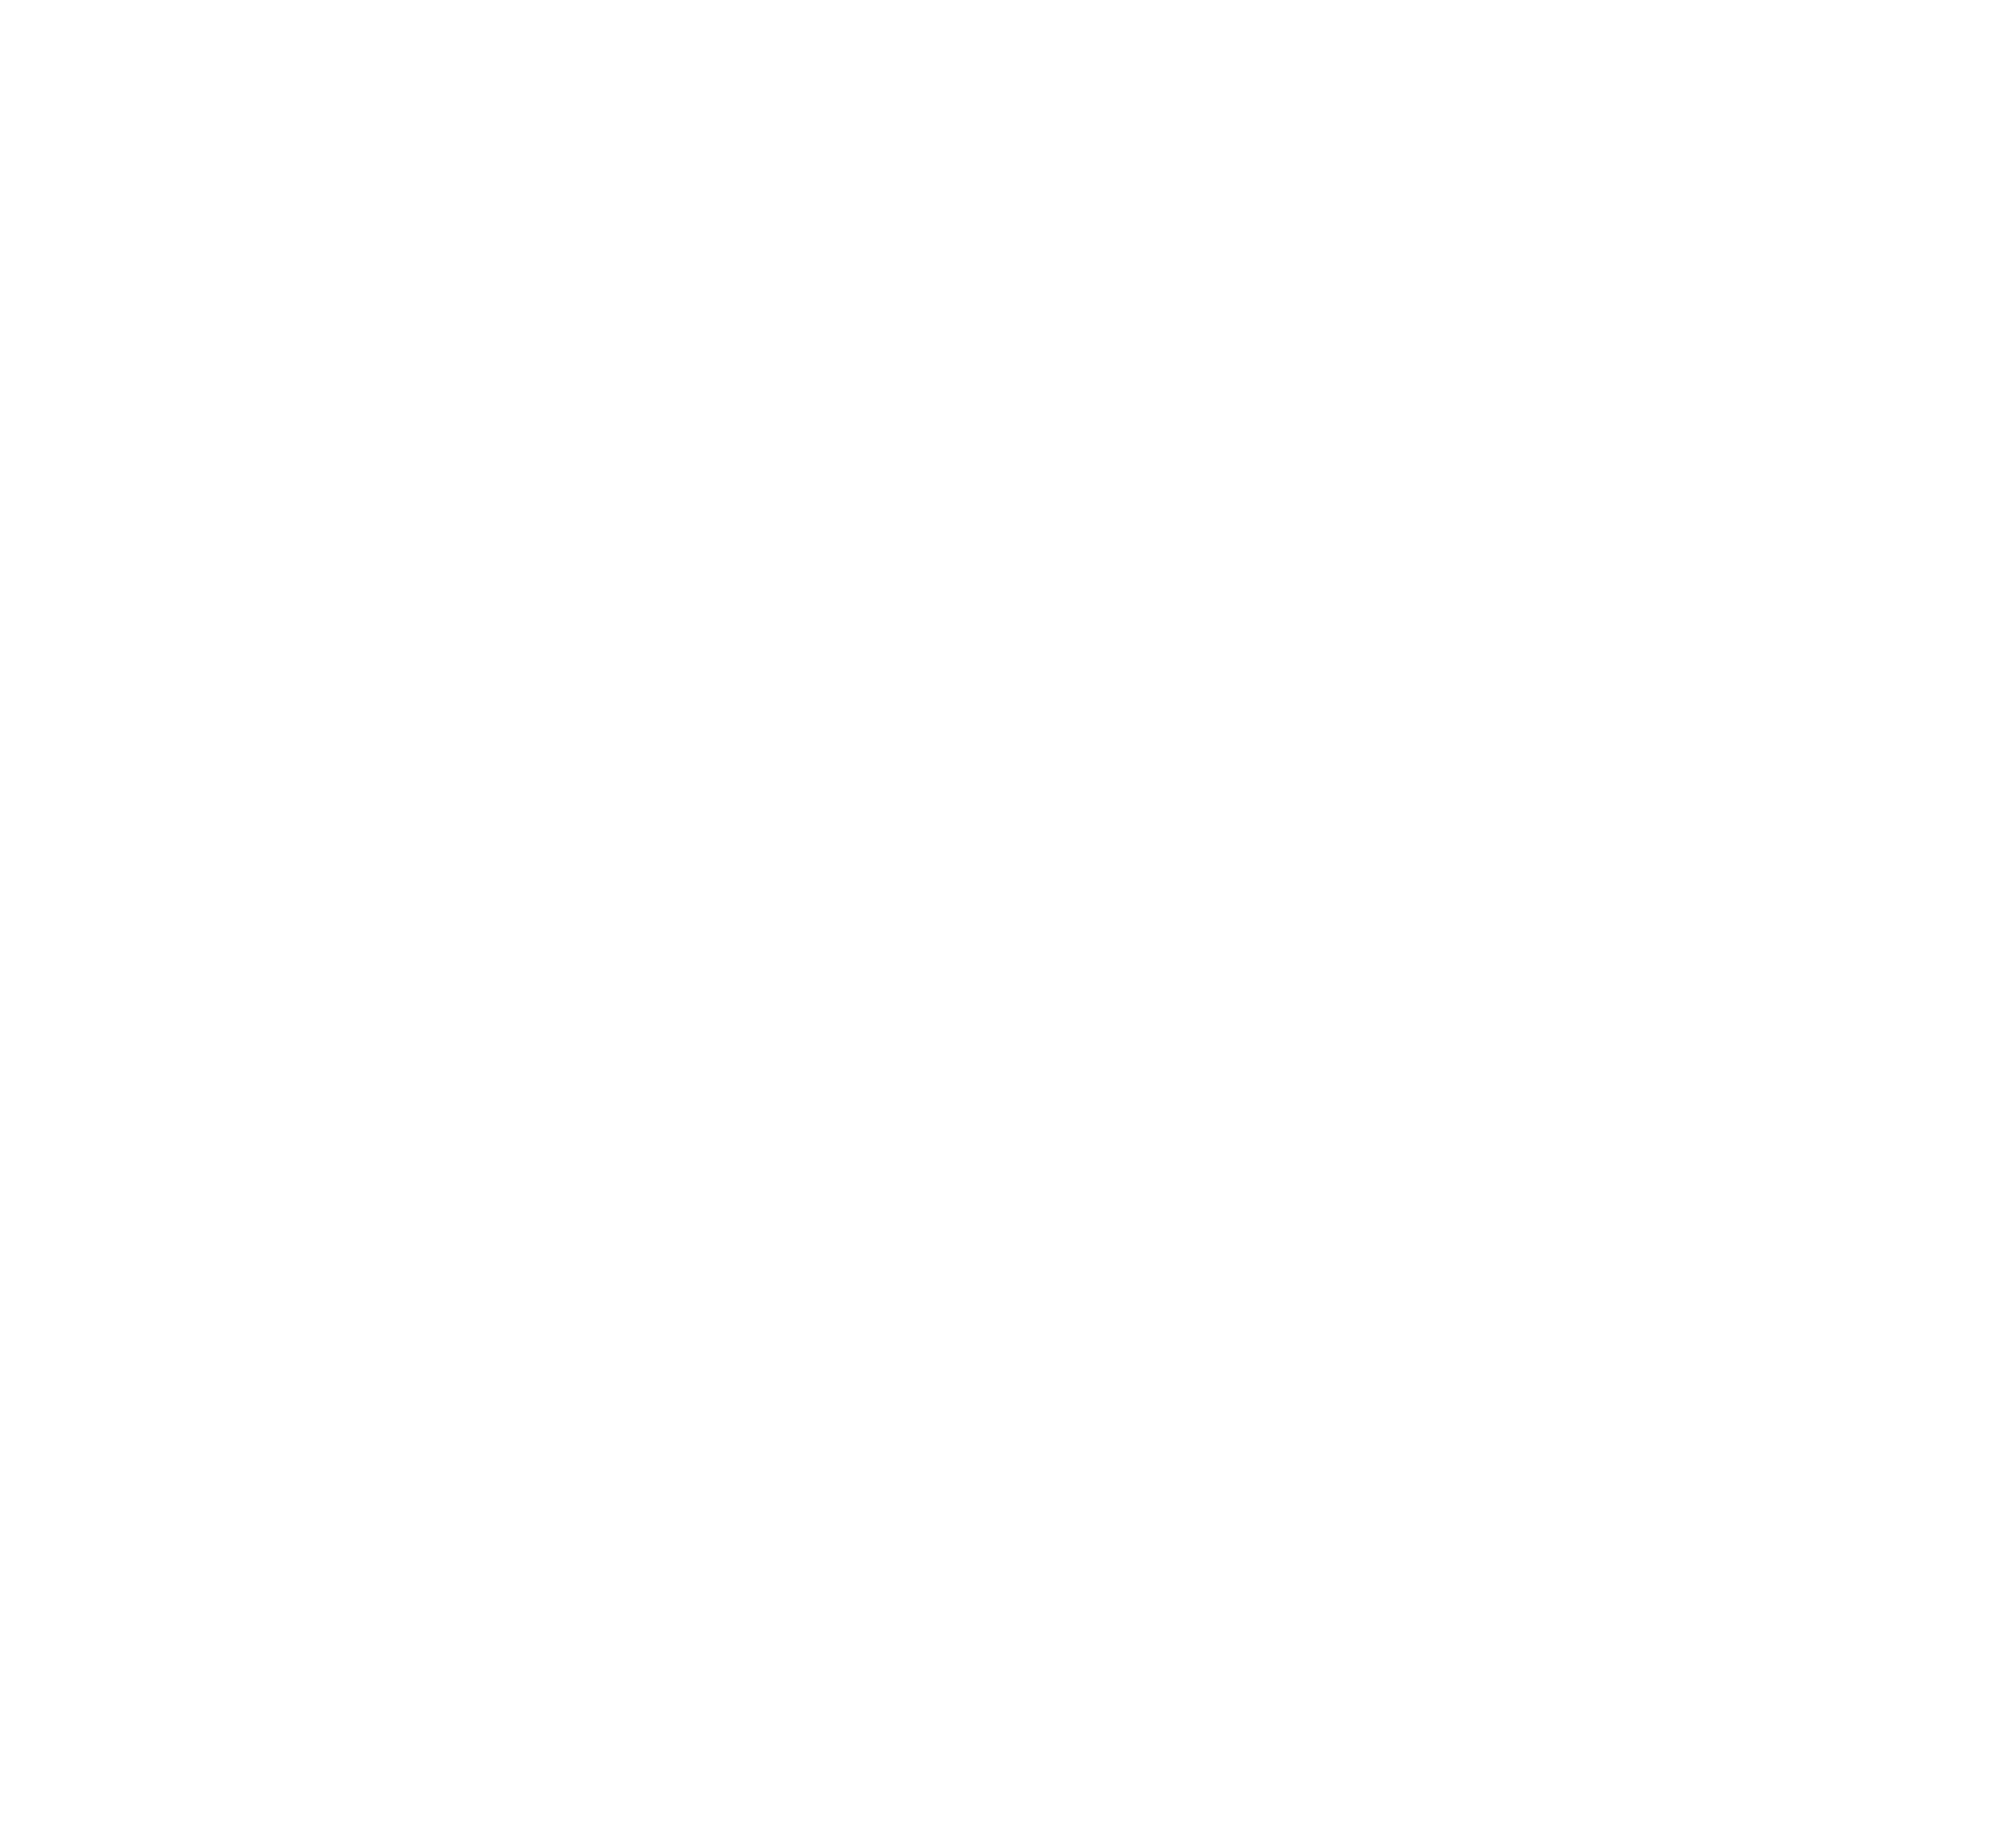 Jessica Clarke Law